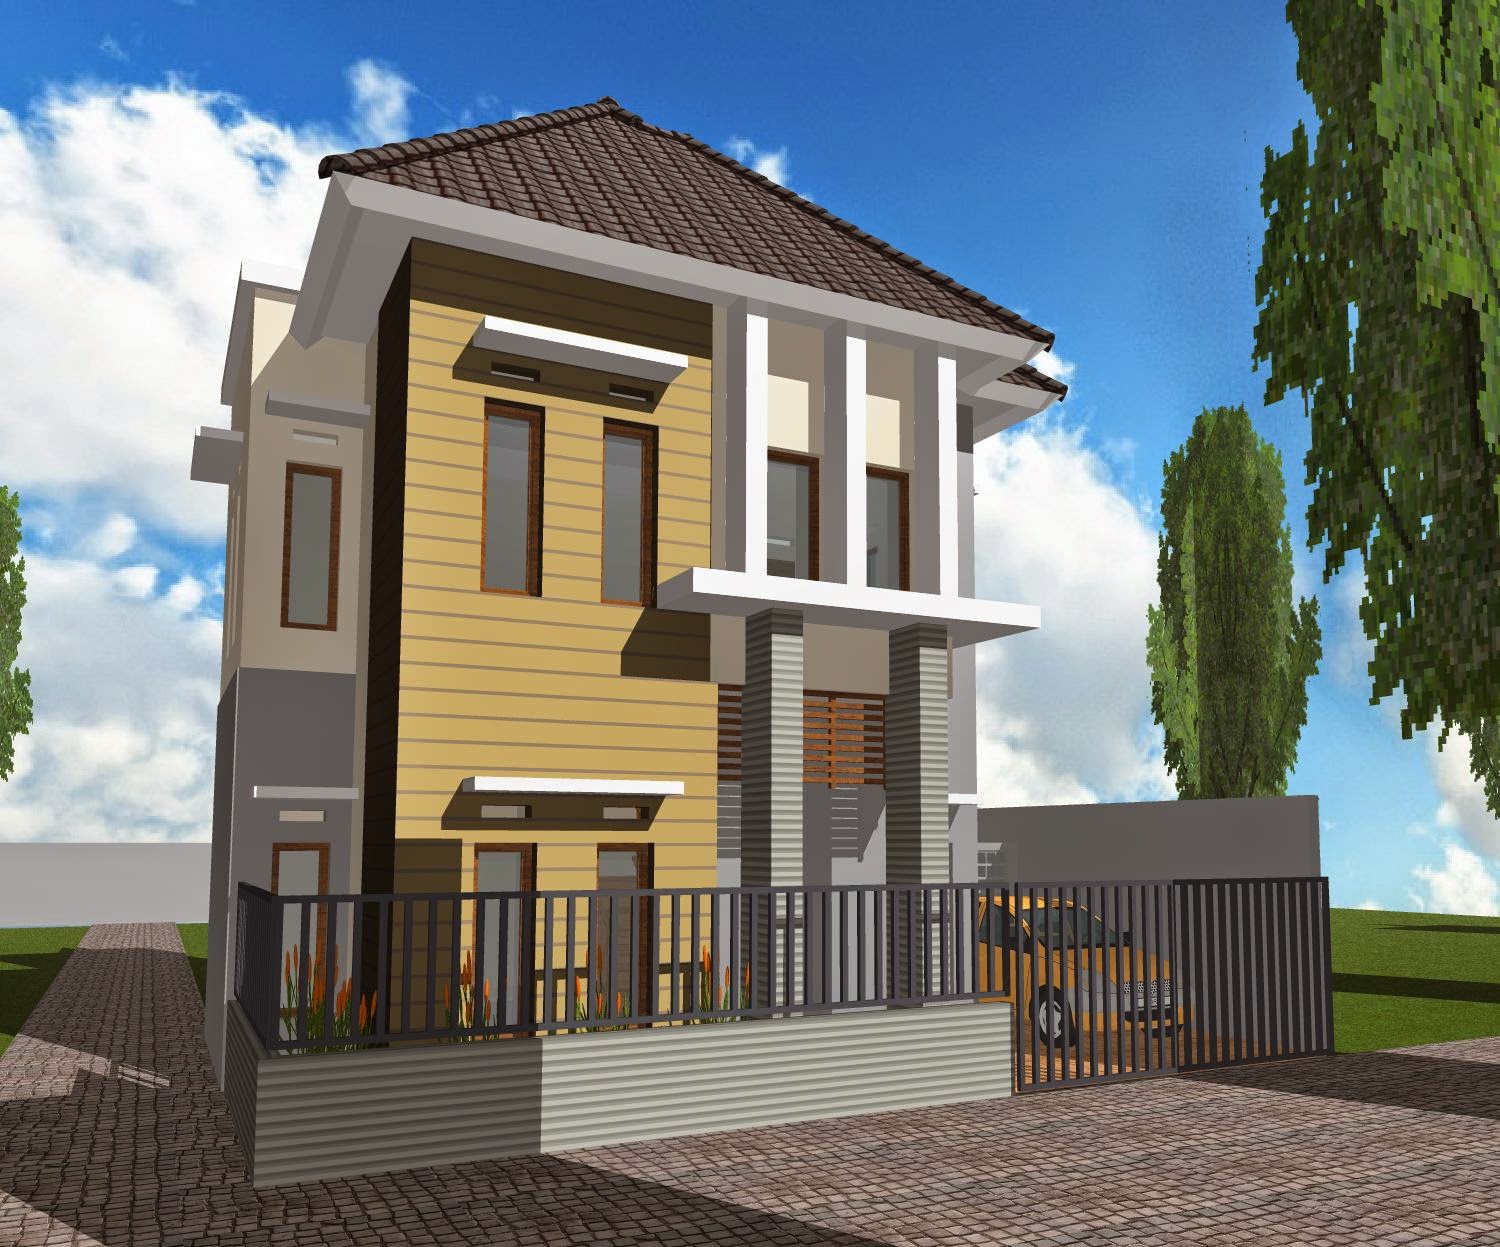 63 Desain Rumah Minimalis Ukuran 6x10 2 Lantai  Desain 